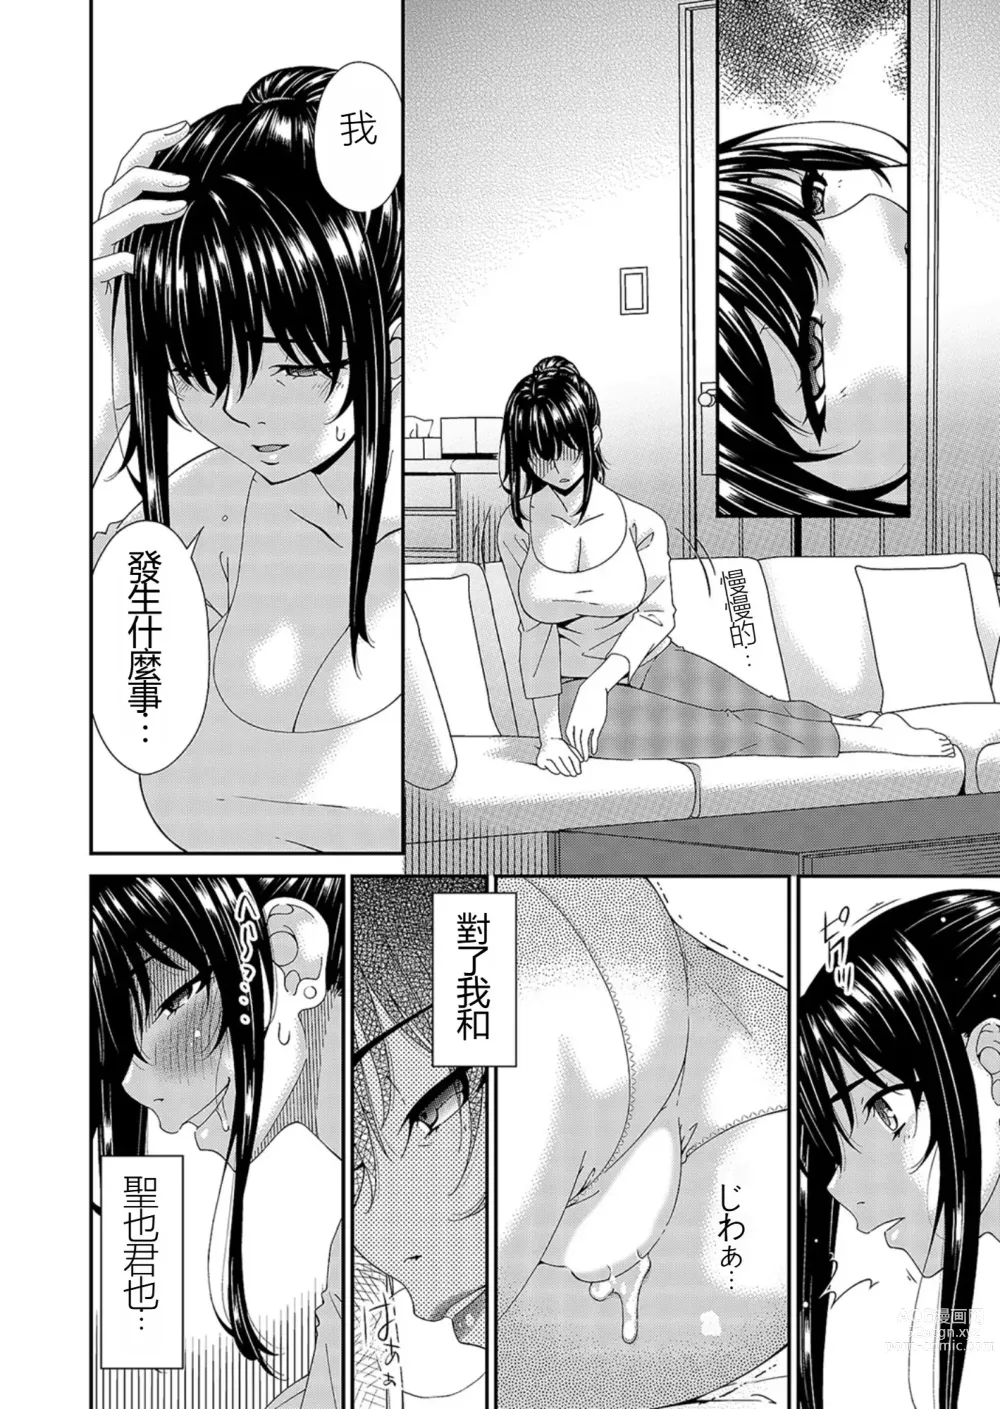 Page 24 of manga Saiin Kazoku Completed